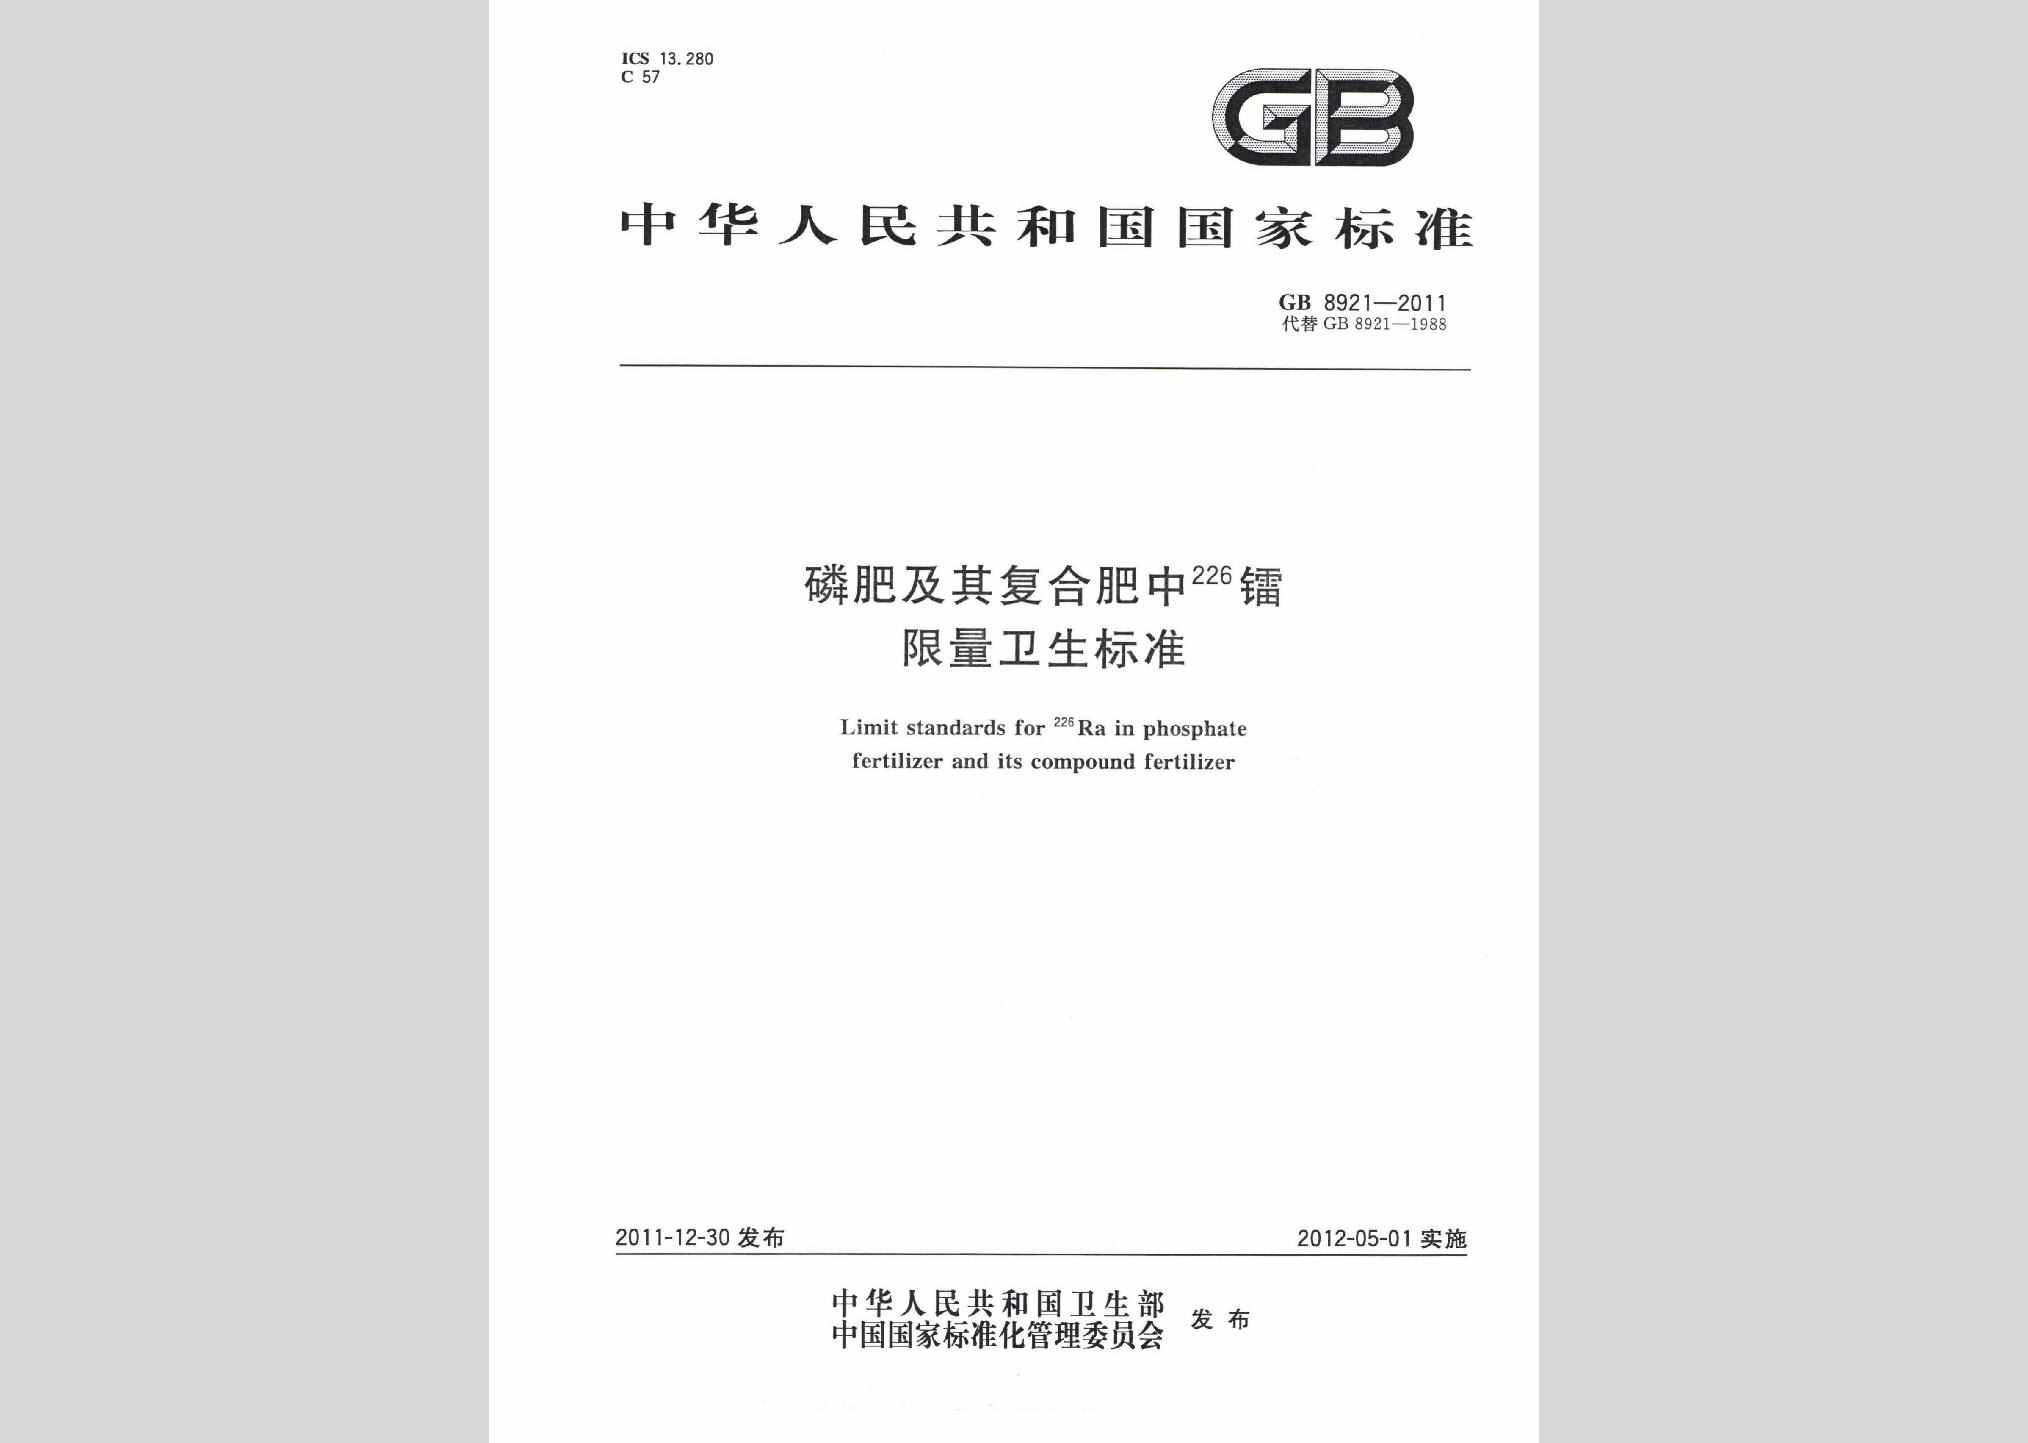 GB8921-2011：磷肥及其复合肥中226镭限量卫生标准